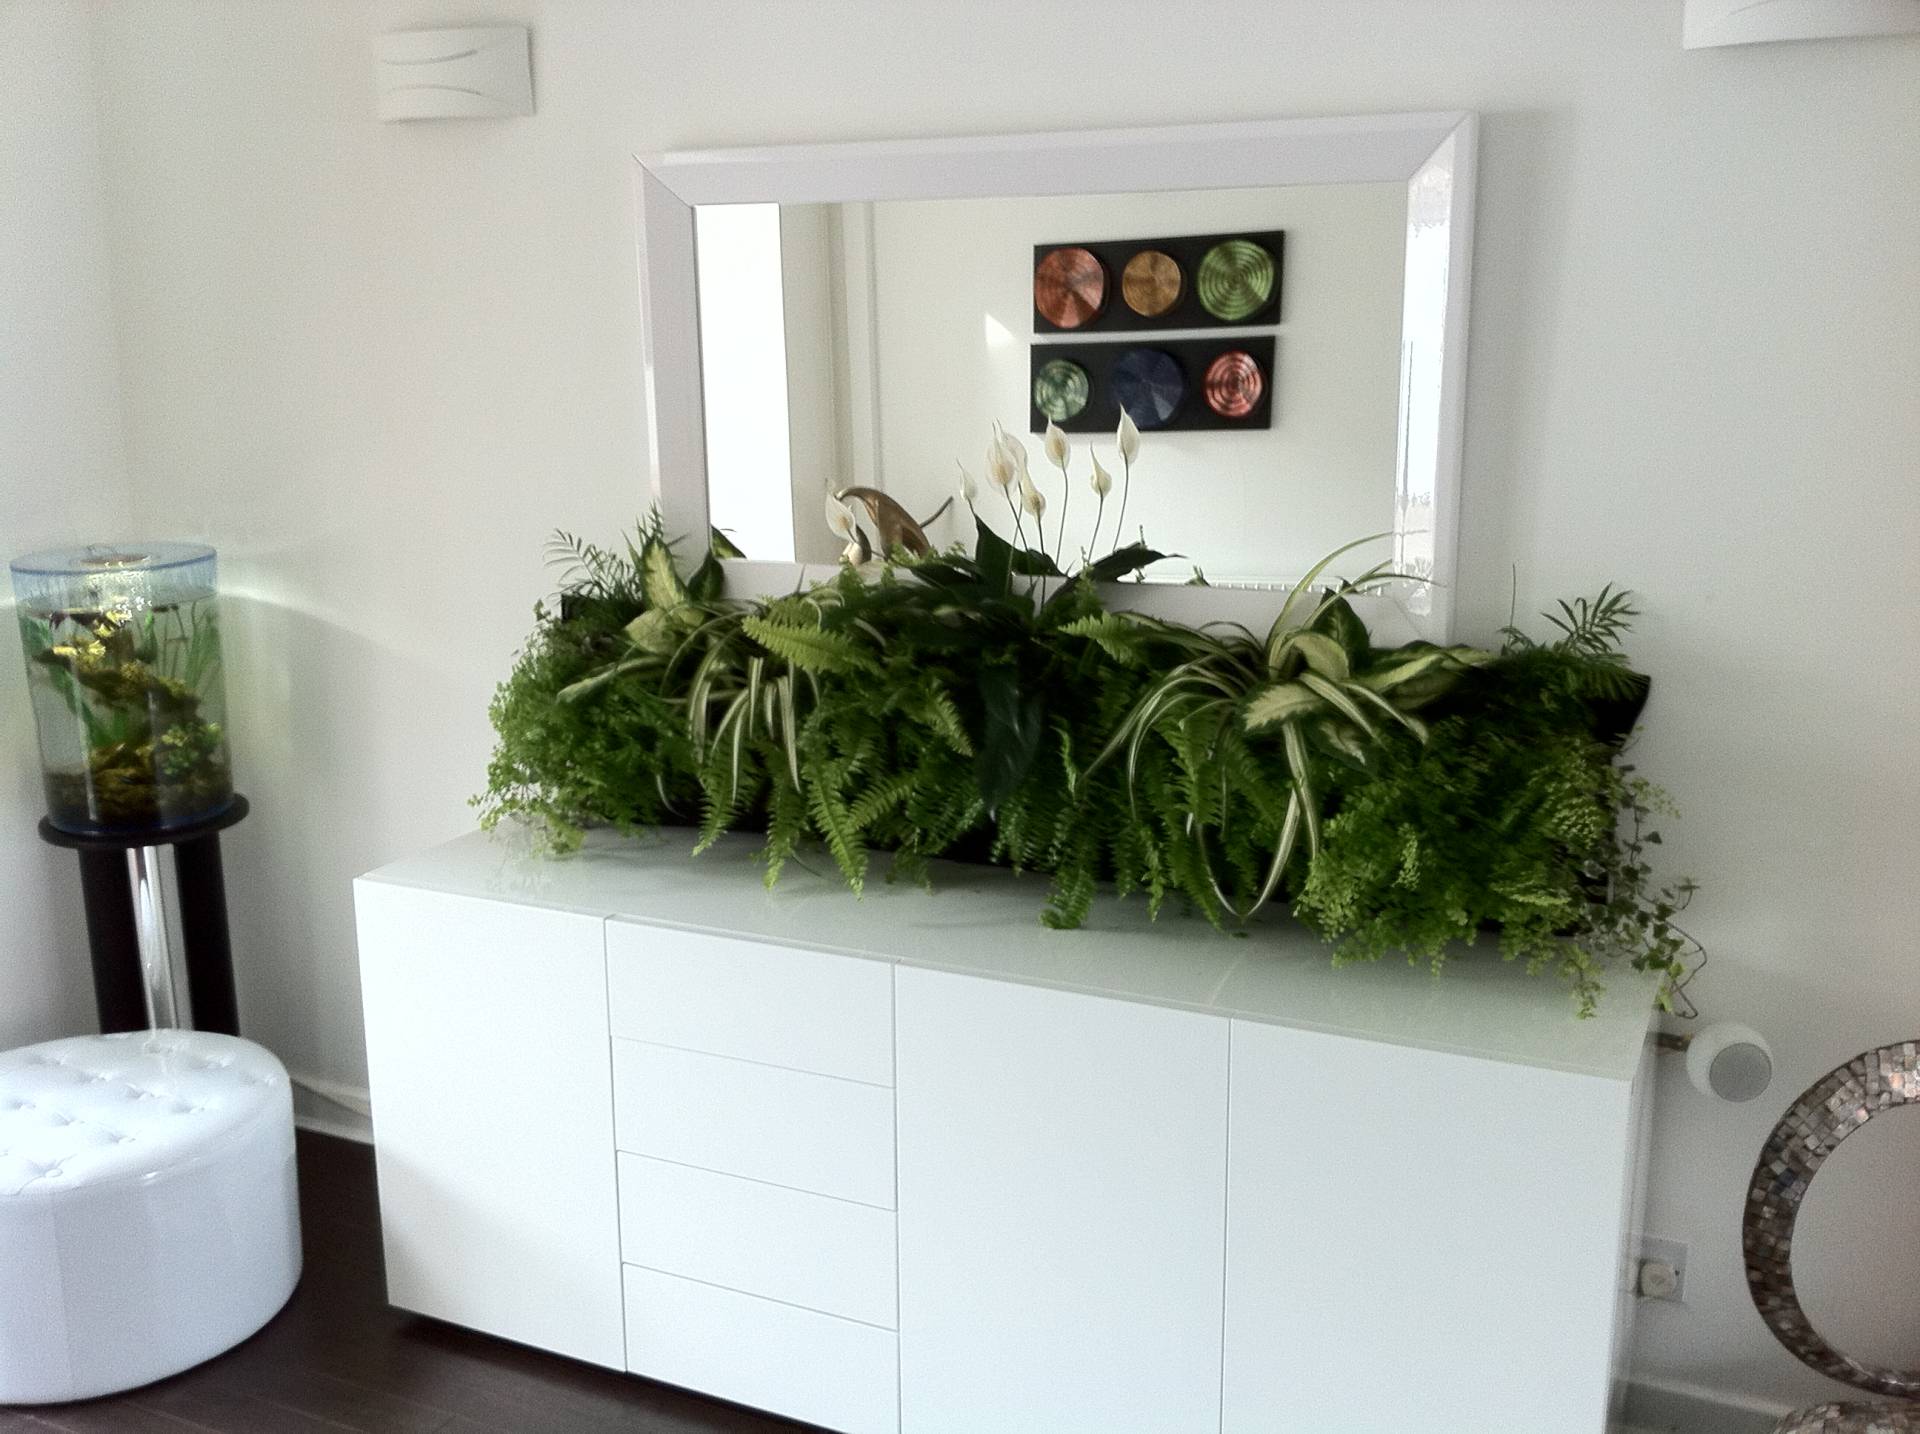 способы размещения комнатных растений в интерьере